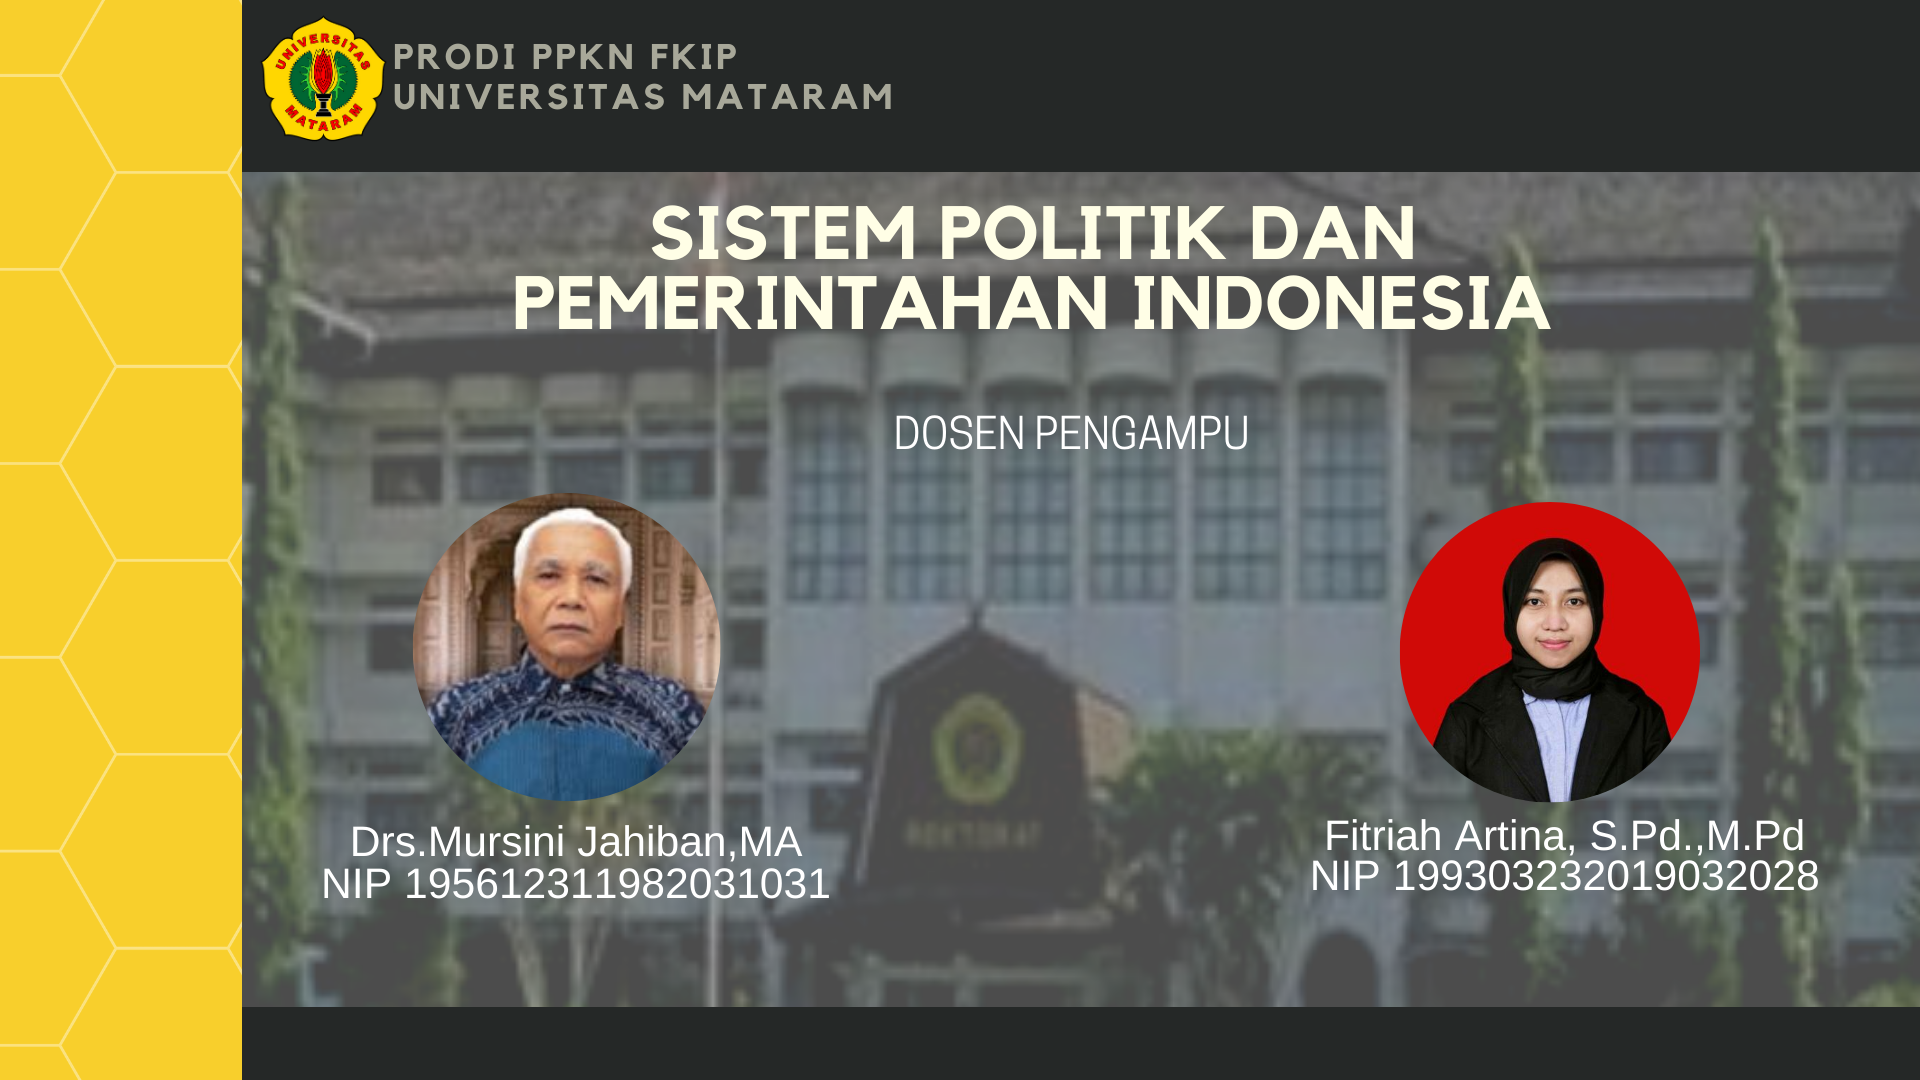 SISTEM POLITIK DAN PEMERINTAHAN INDONESIA